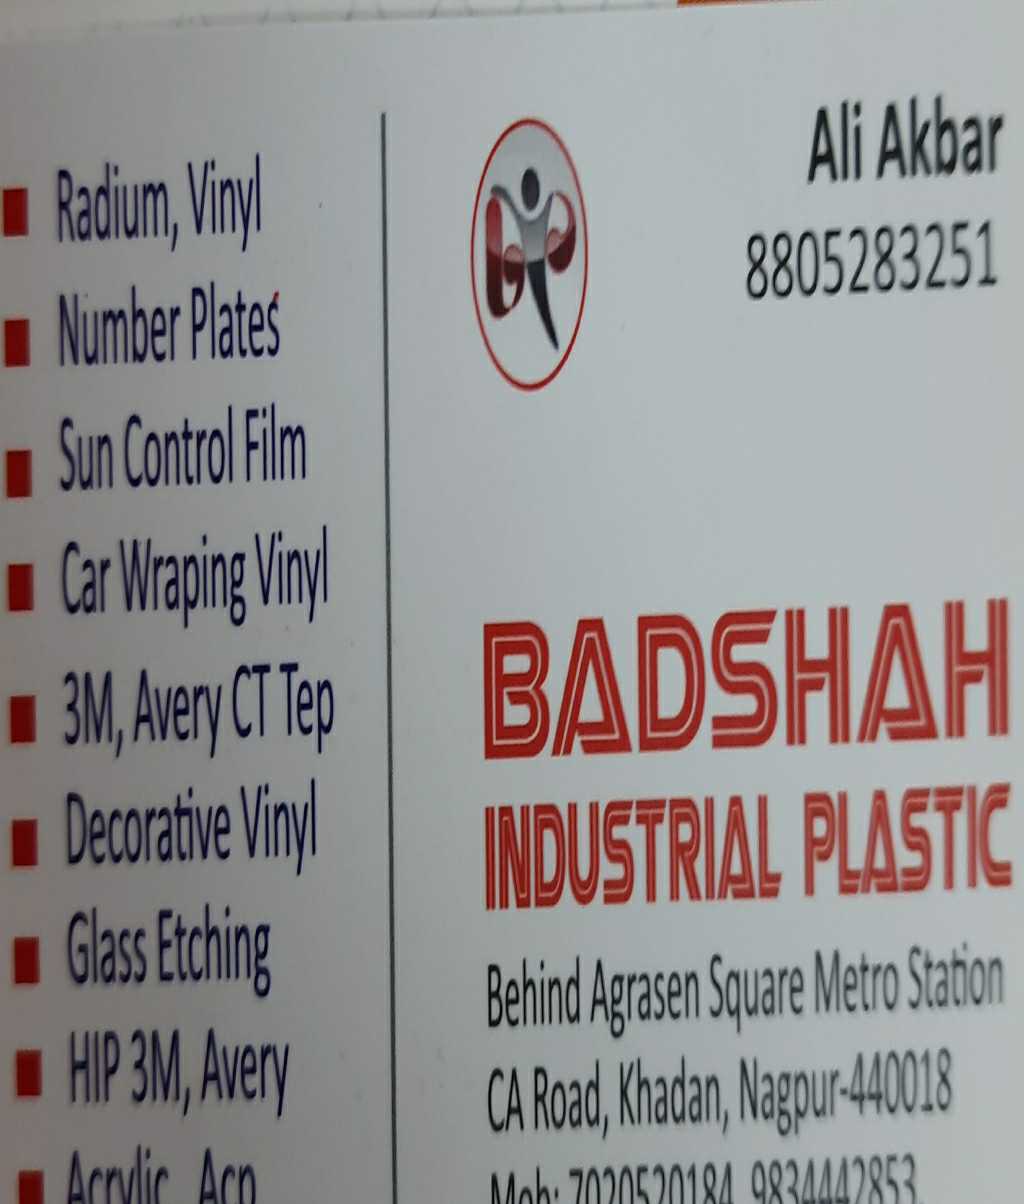 BADSHAH INDUSTRIAL PLASTIC